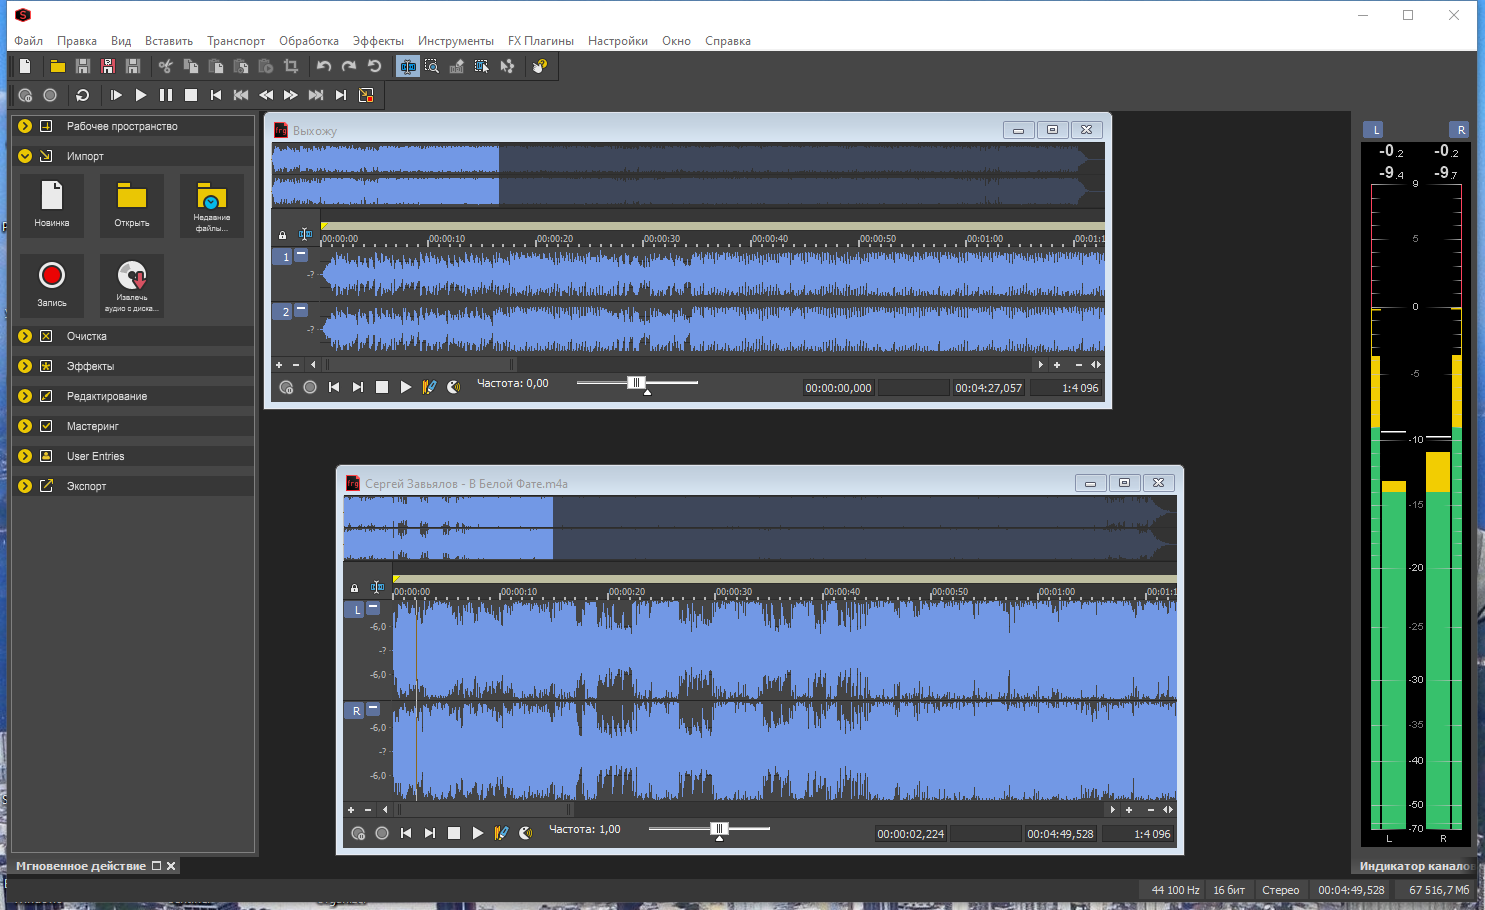 MAGIX Sound Forge Pro Suite 16.0 Build 79 (x64) RePack by elchupacabra [Multi/Ru]